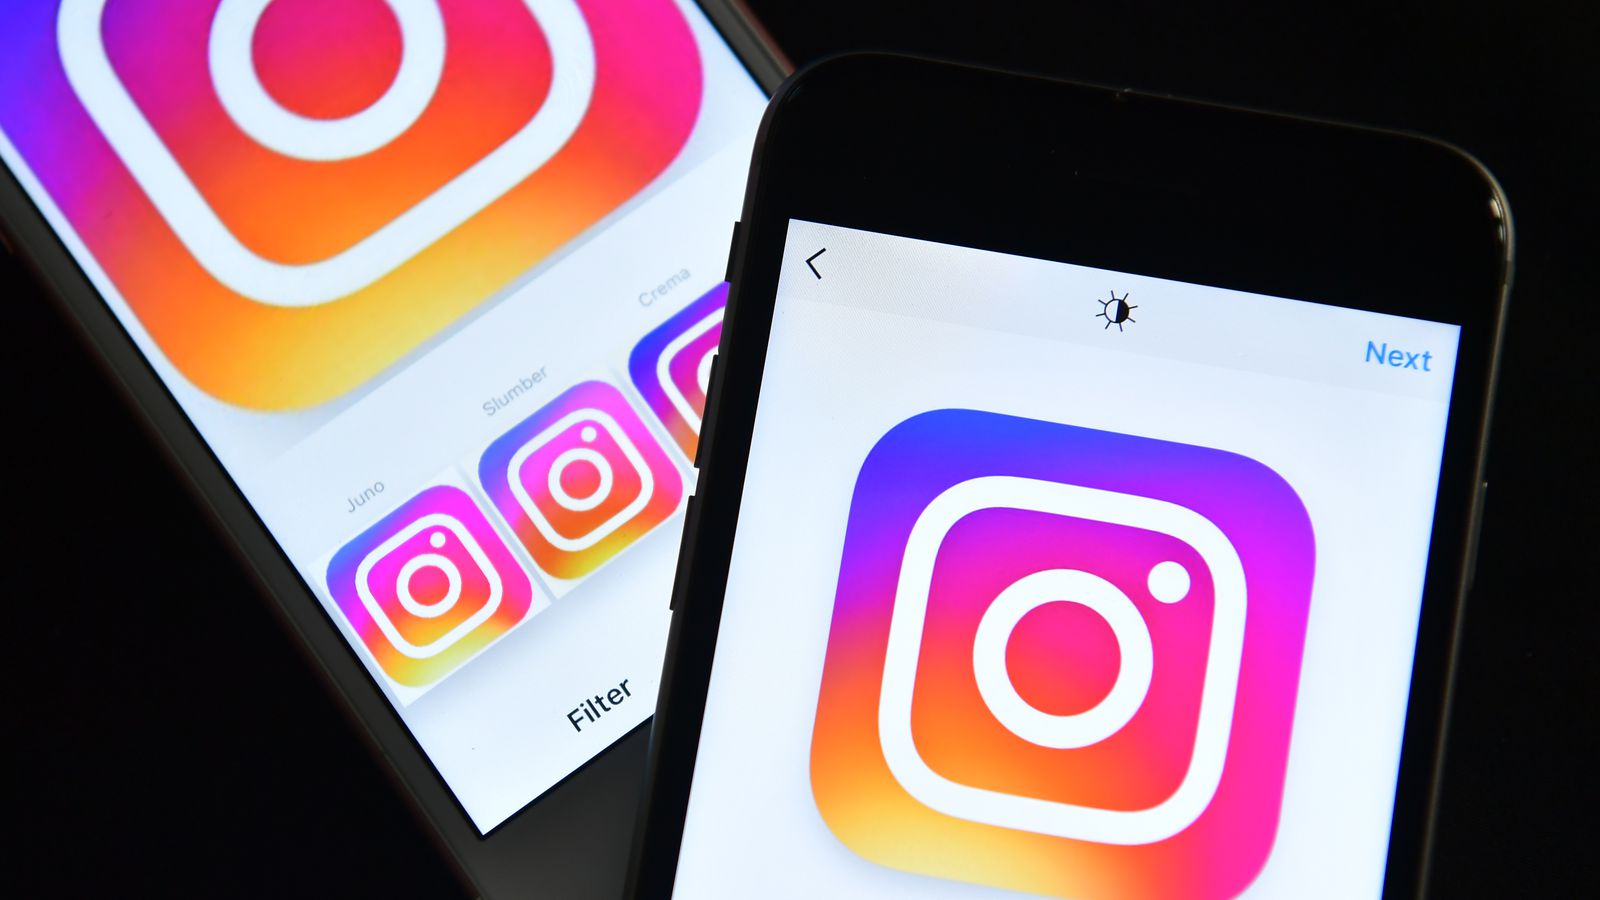 Як редагувати сторіс в Instagram: з компютера або телефону, після публікації, не видаляючи, додатки